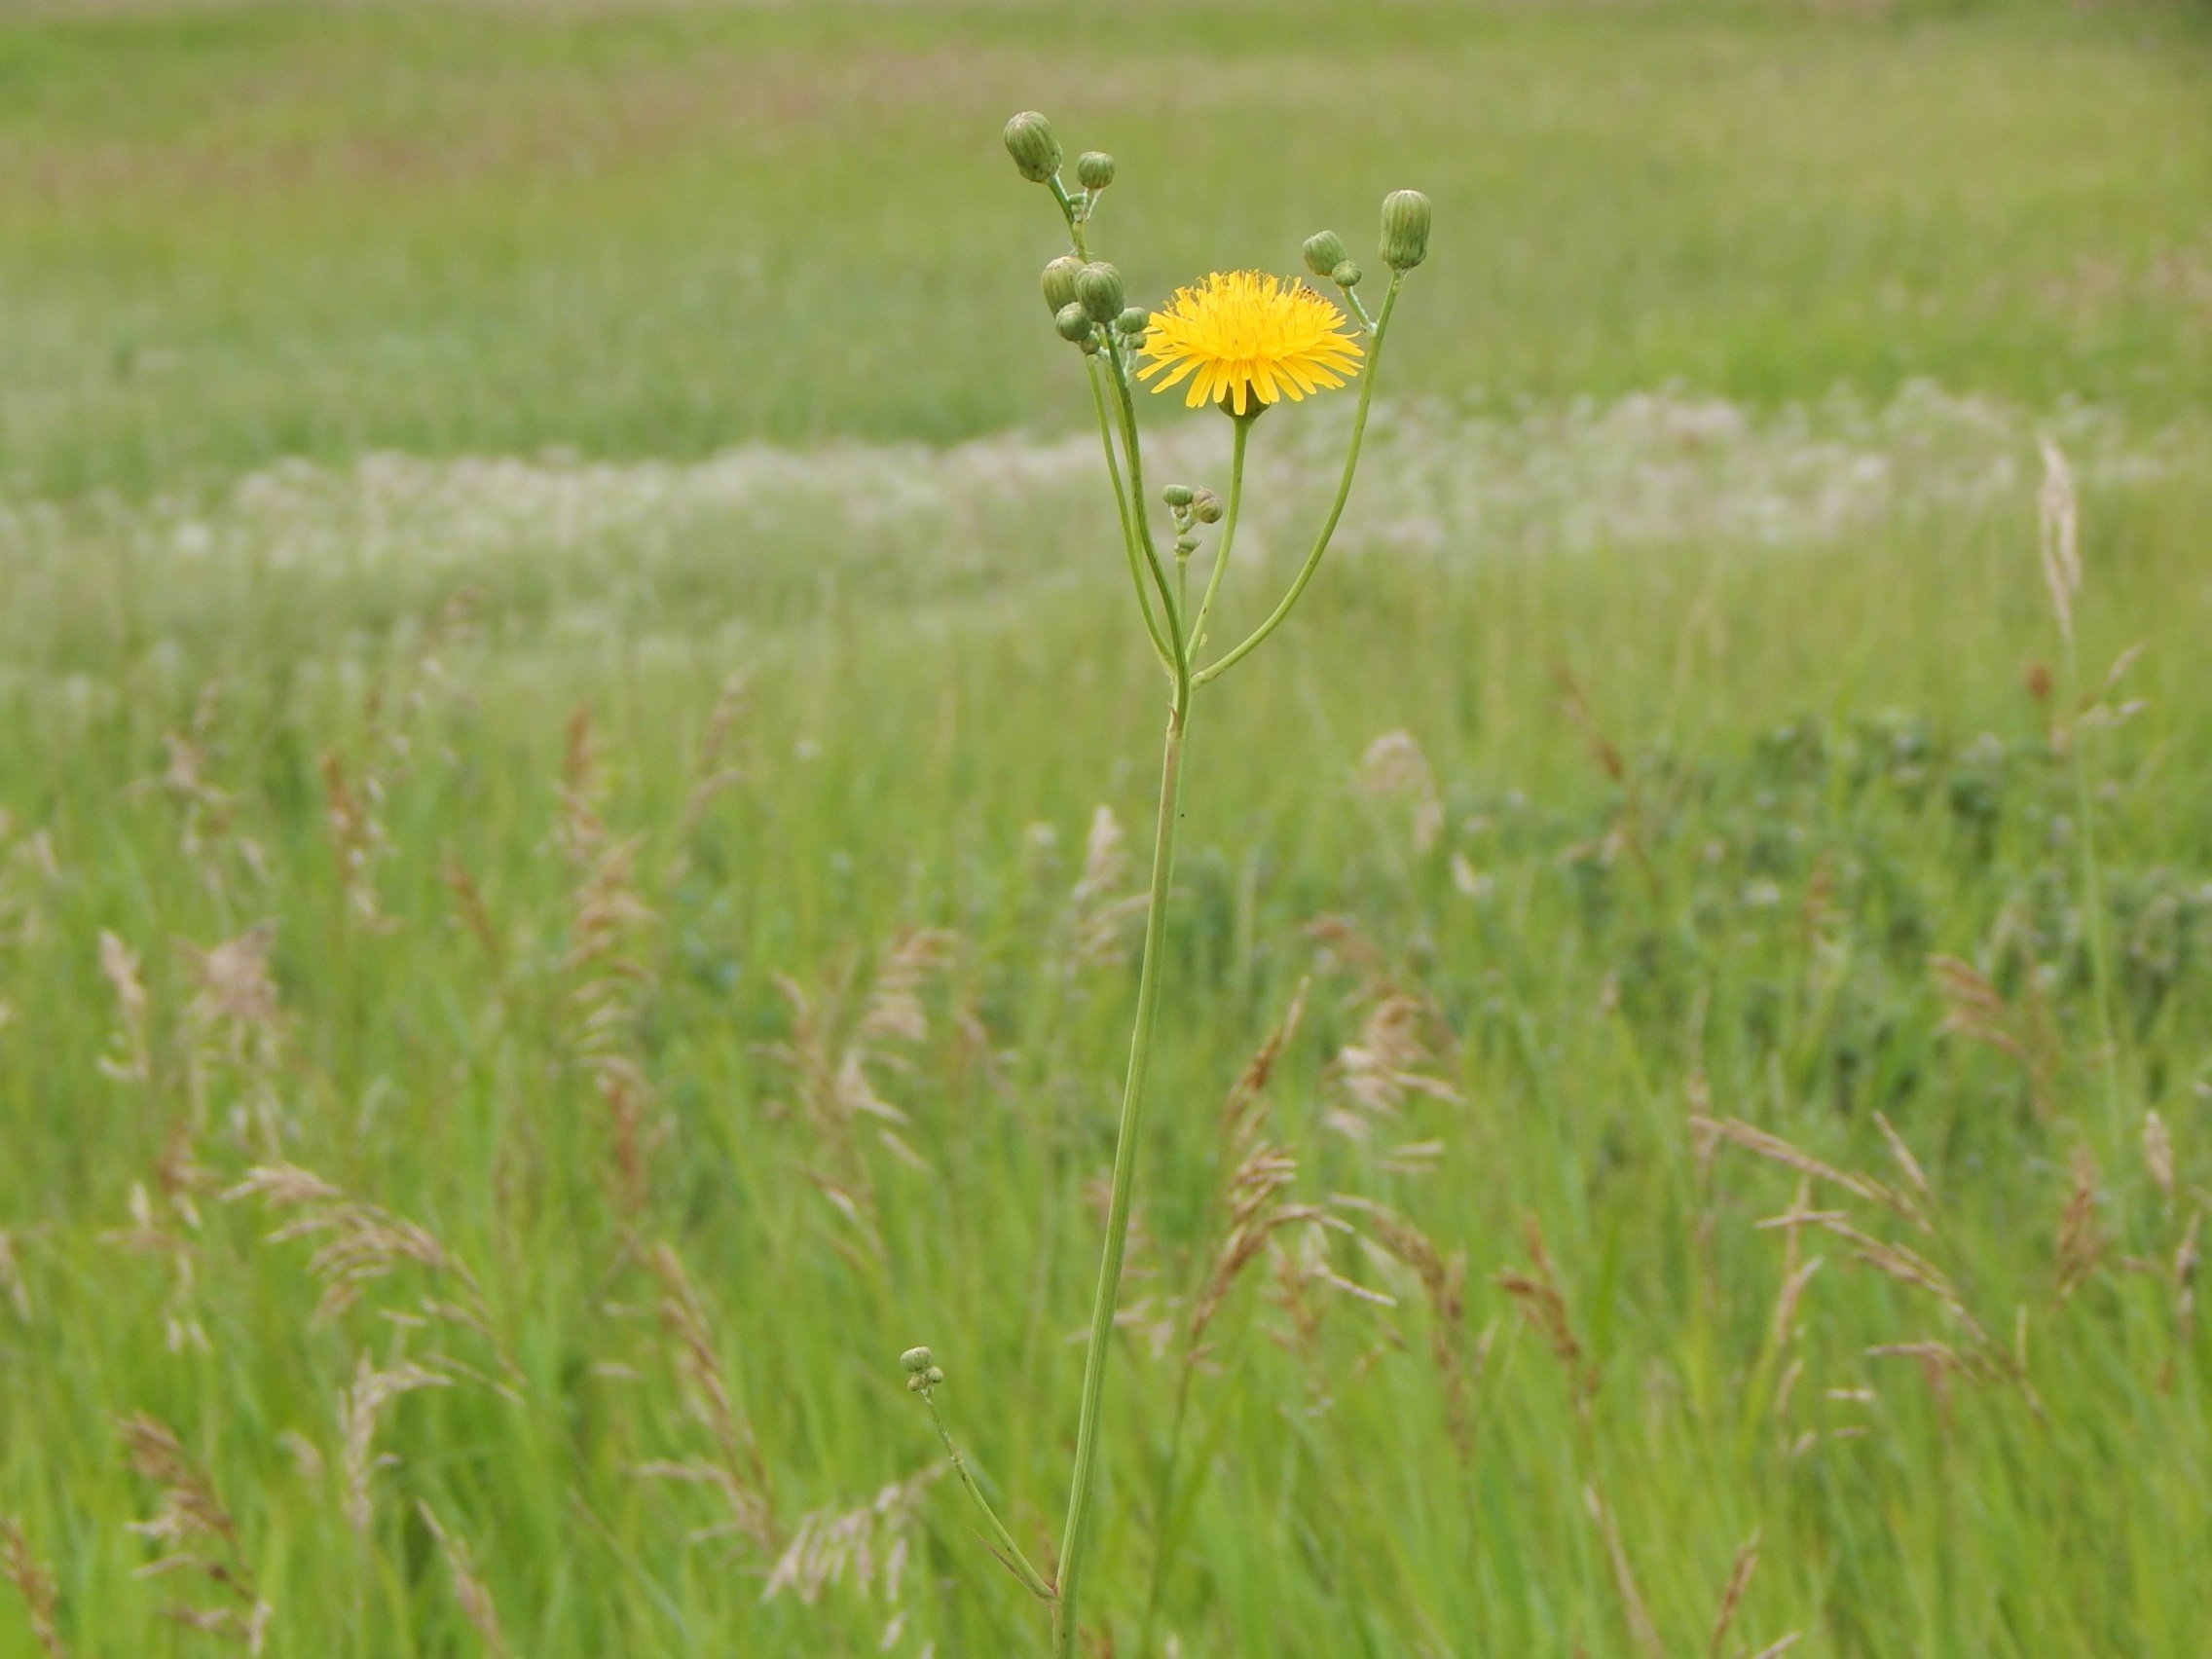 yellow petal flower in grass field